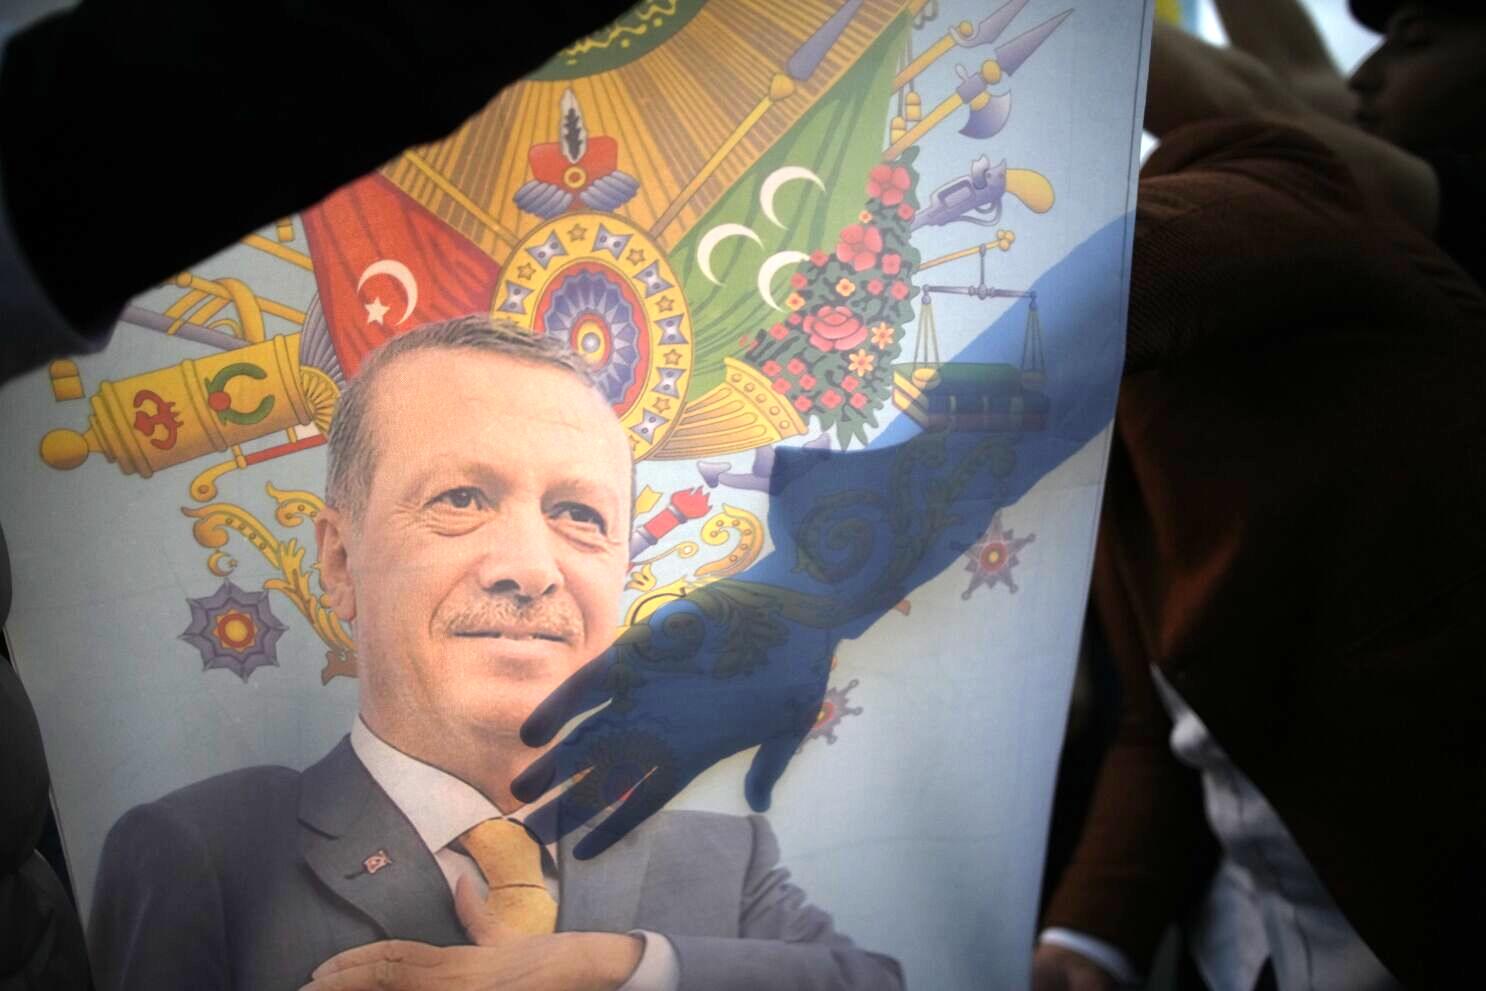 نقشه مخوف اردوغان
